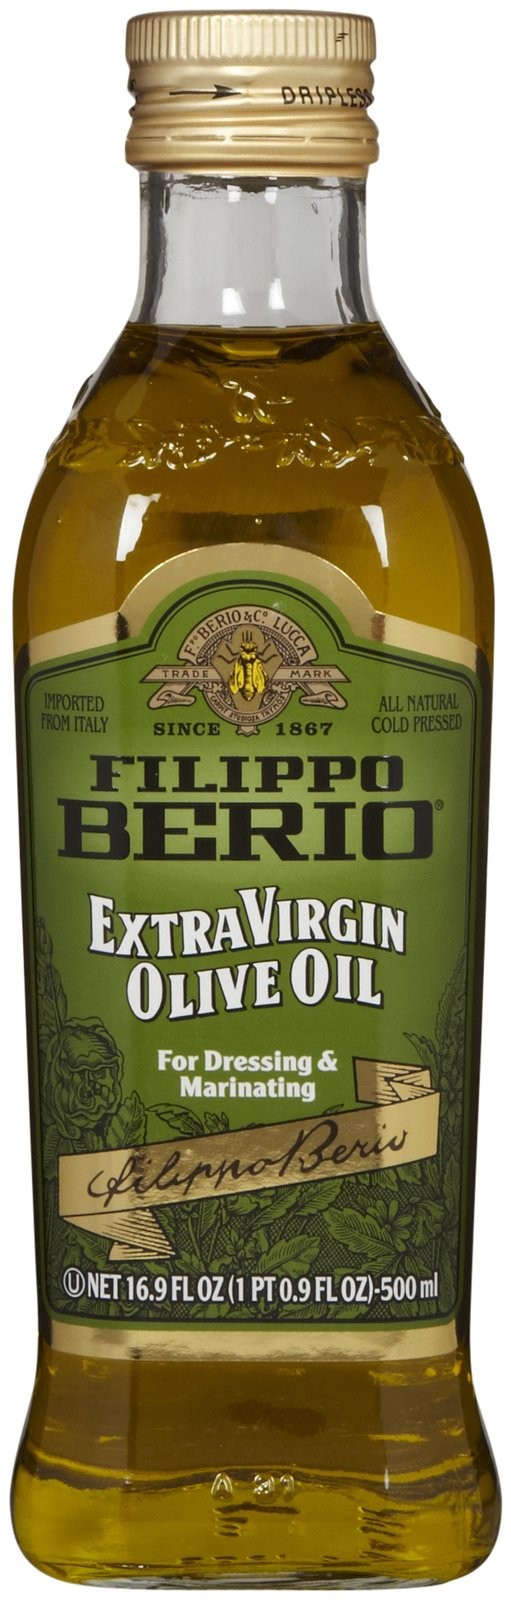 Filippoberio - Extra Virgin Olive Oil Bottle